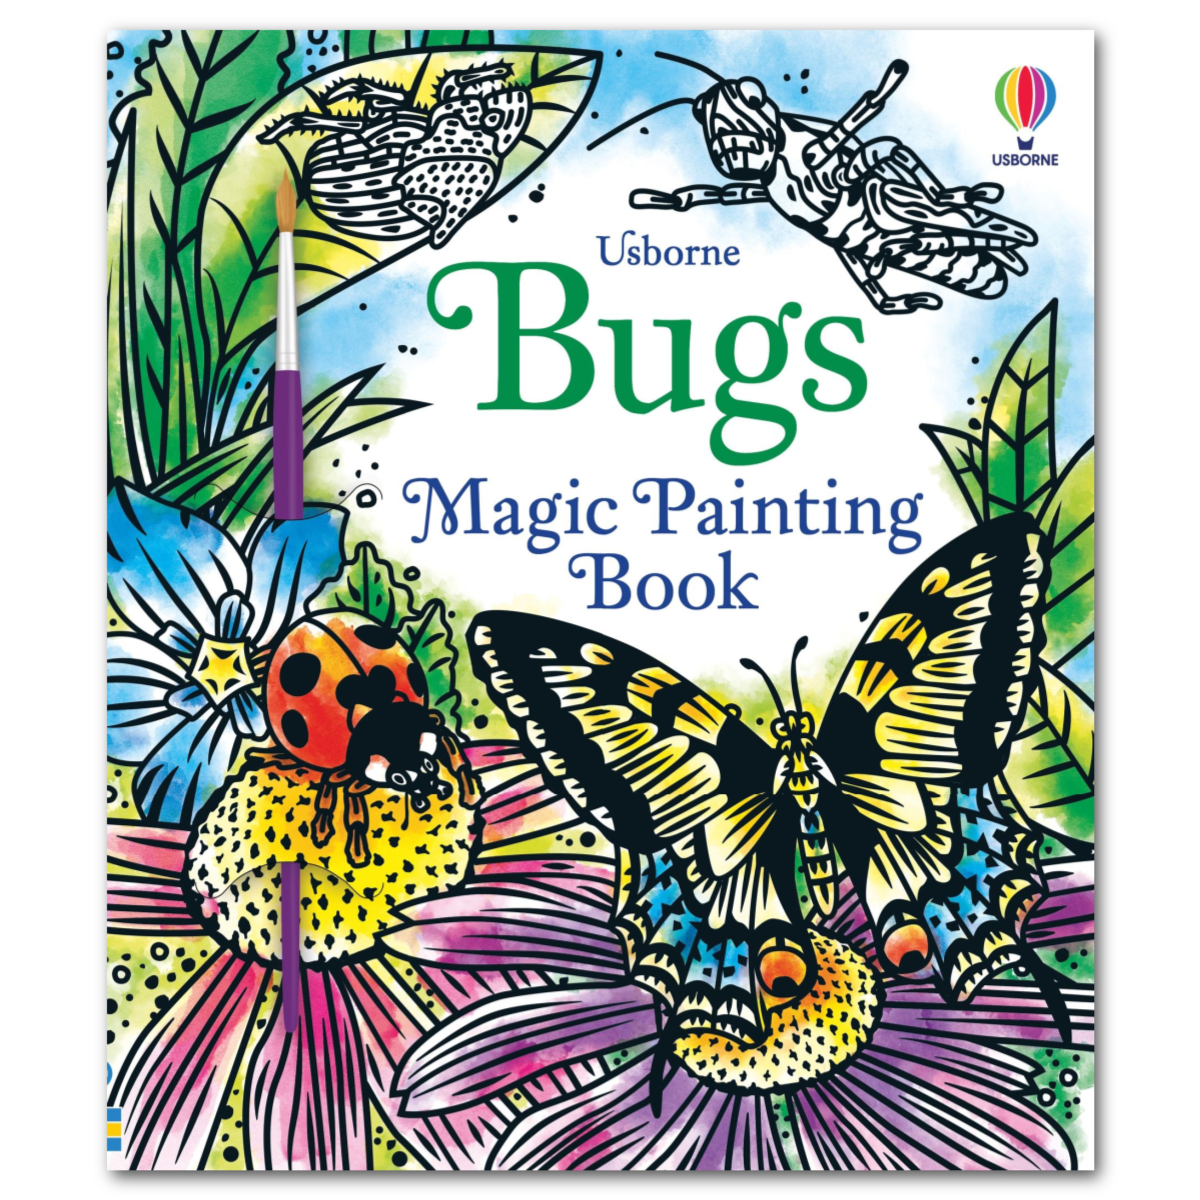 Usborne Books | Magic Painting Book - Bugs